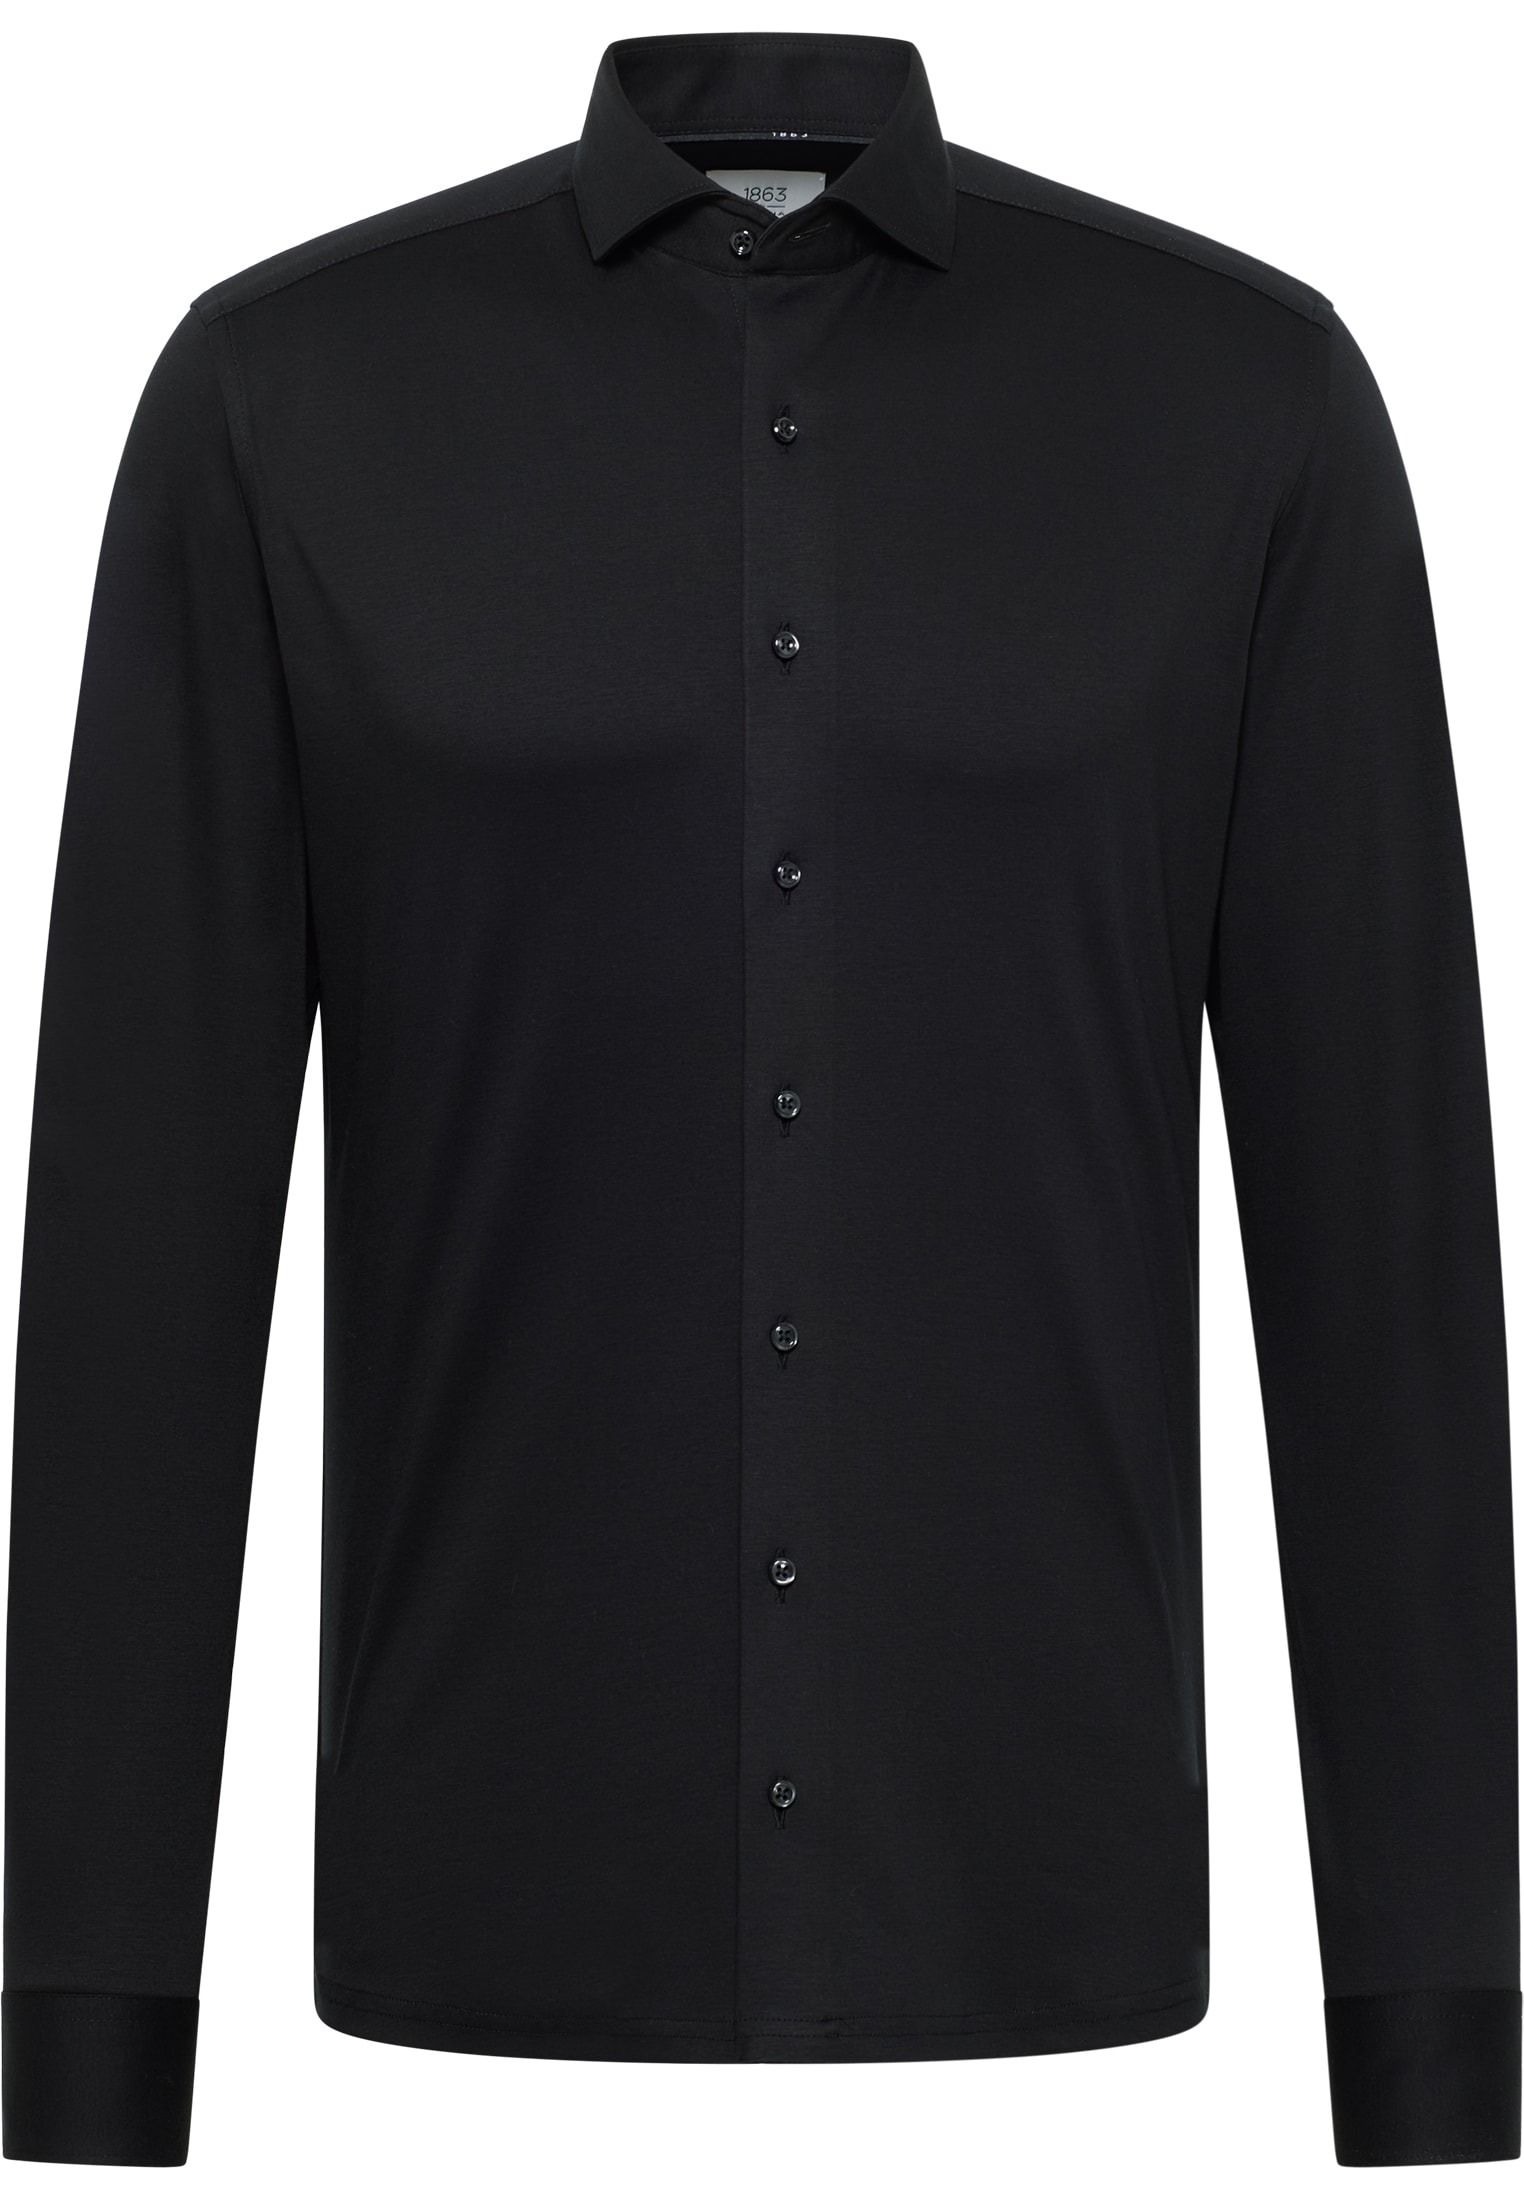 SLIM FIT Jersey Shirt noir uni